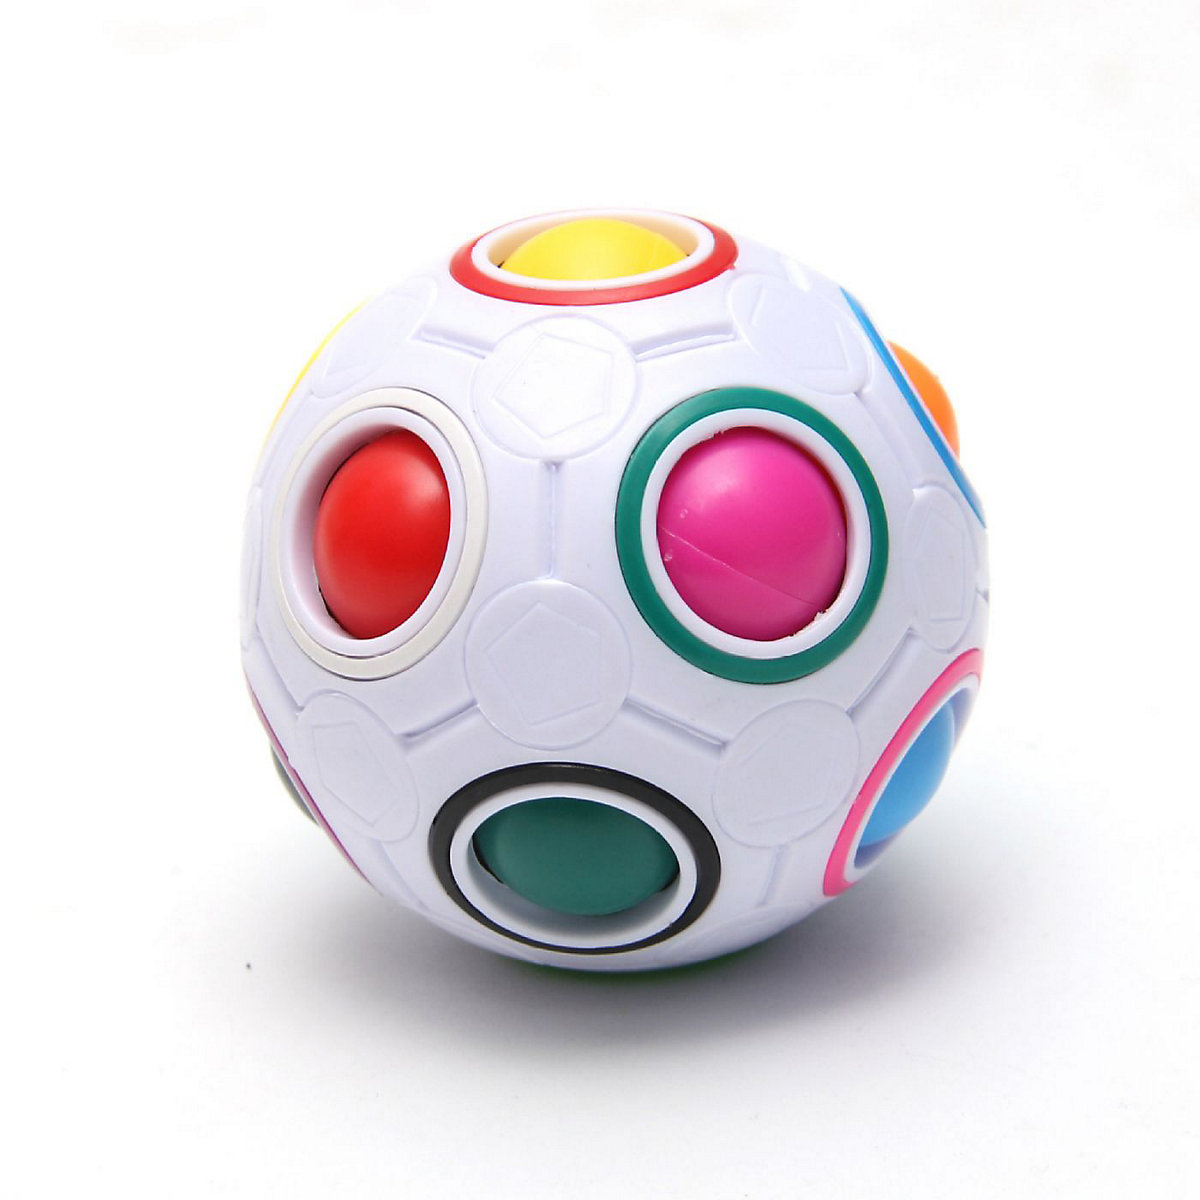 Syntek Regenbogenball Geschicklichkeitsspiel für Kinder und Erwachsene Spannendes Knobelspiel 12 Loch